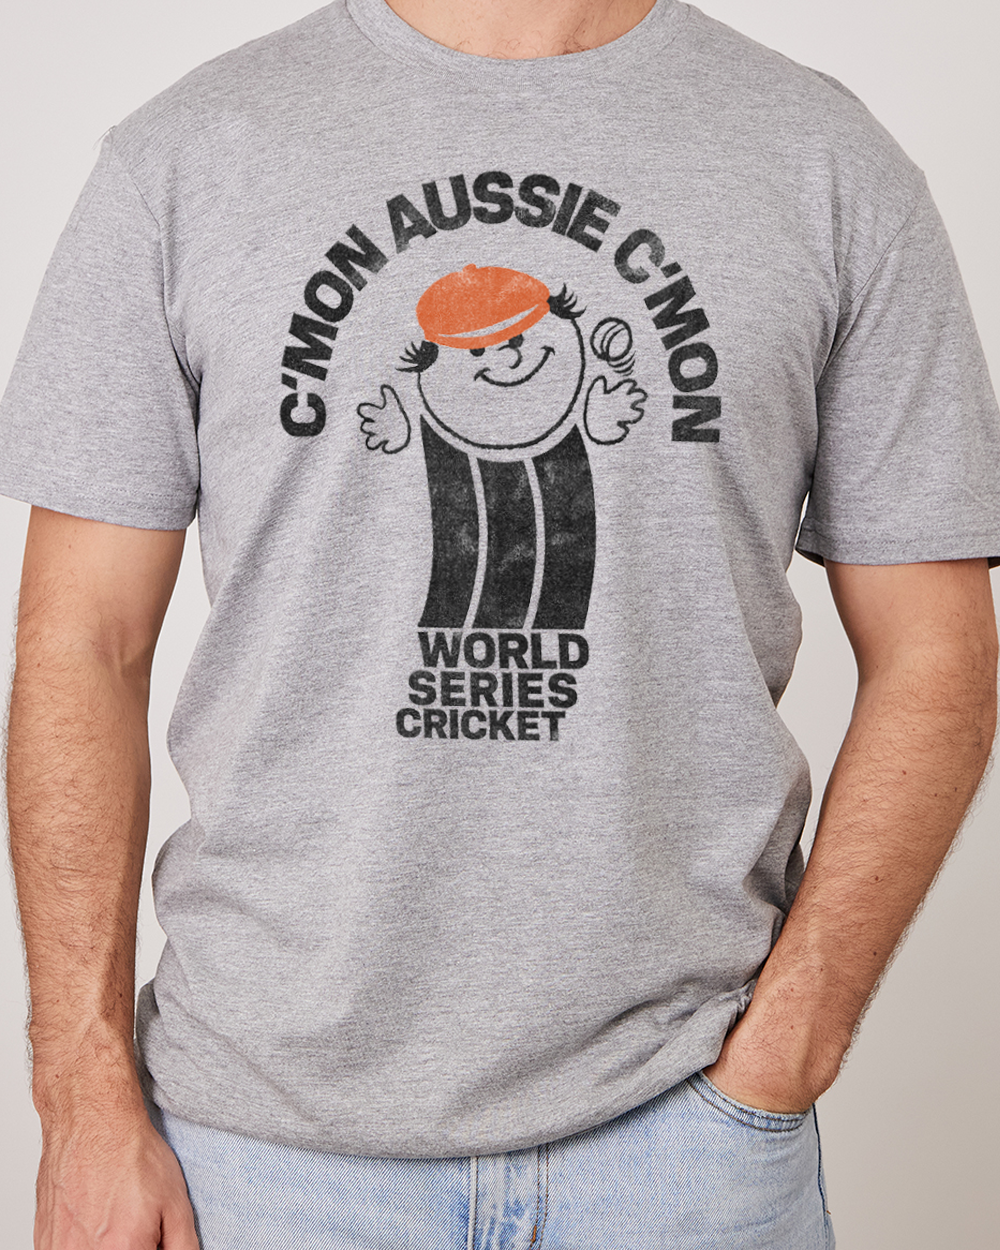 C'mon Aussie C'mon T-Shirt Australia Online #colour_grey